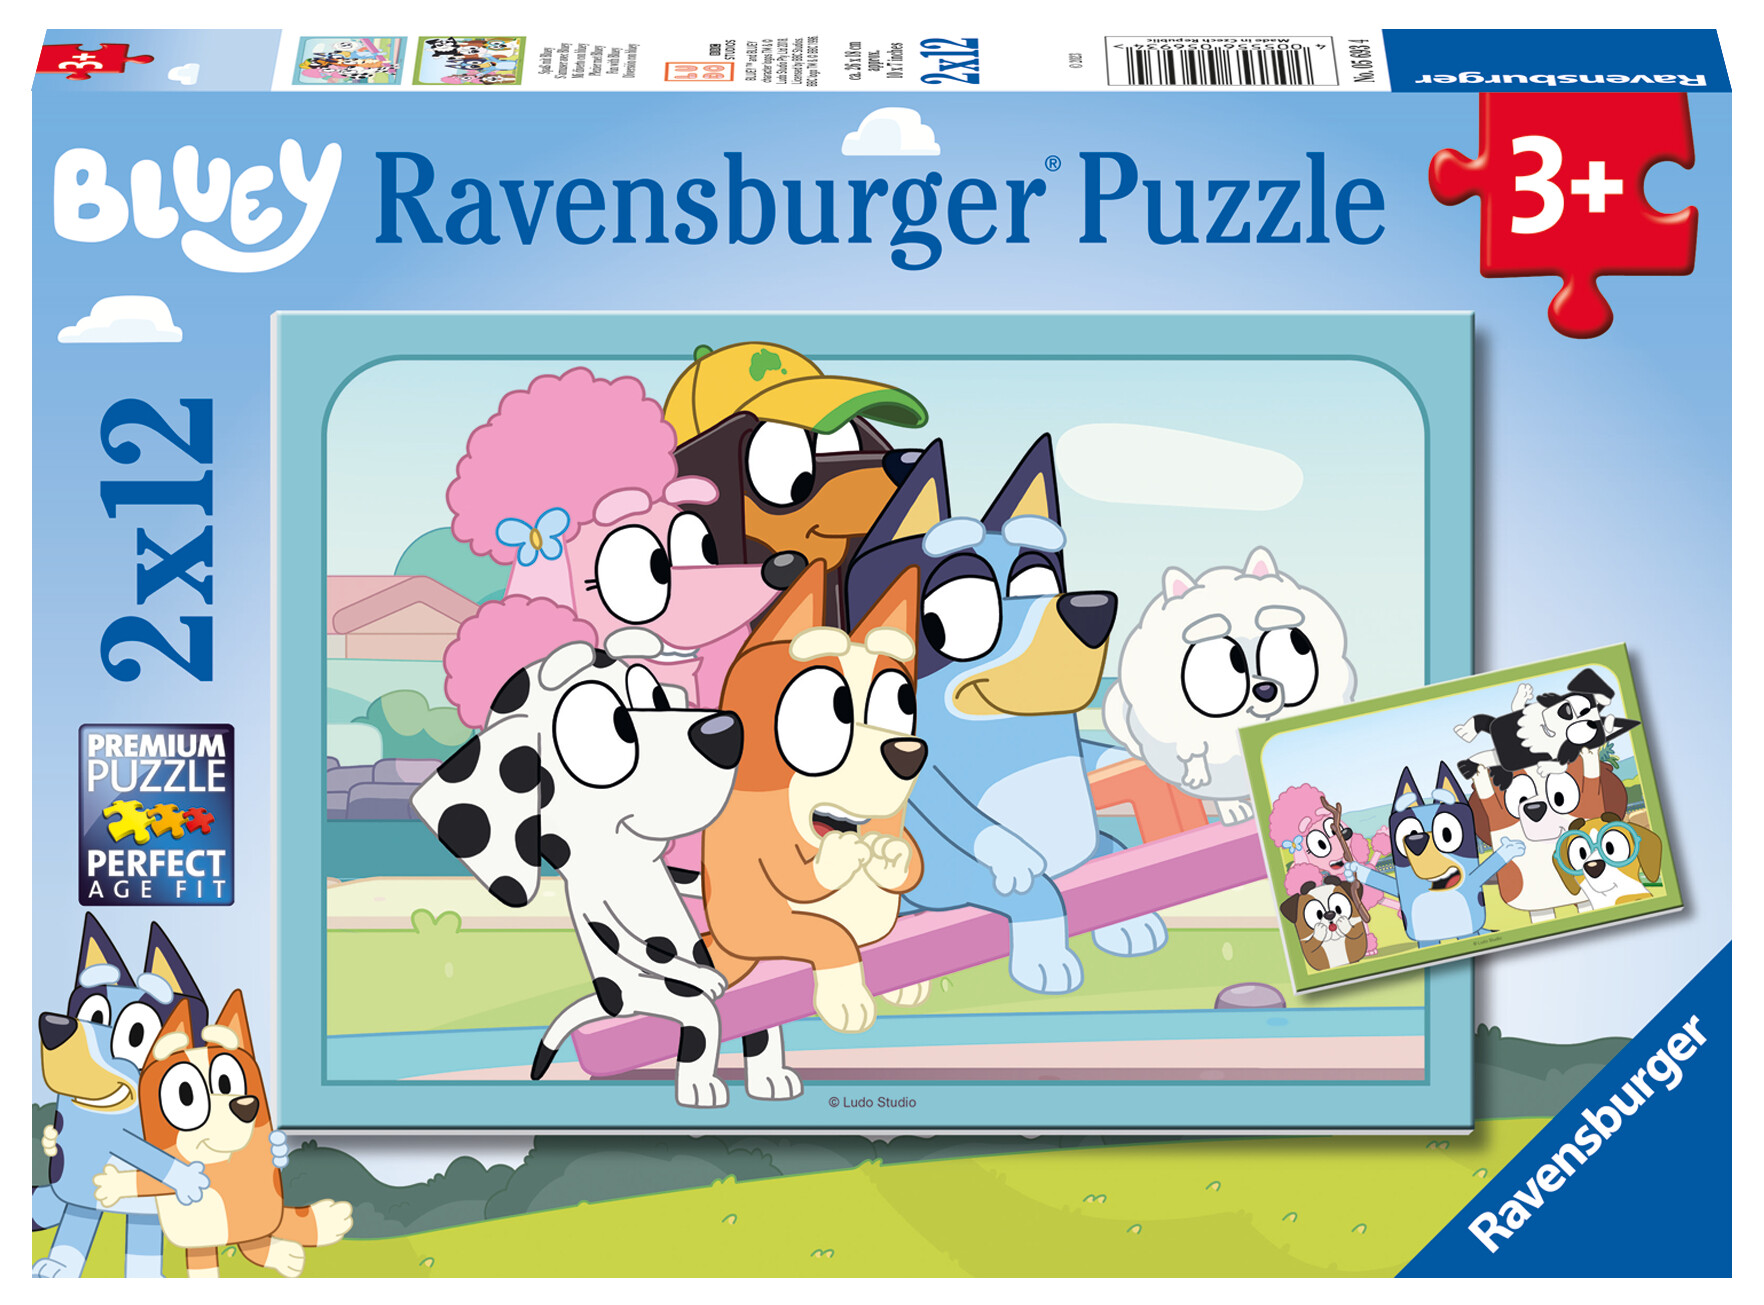 Ravensburger - puzzle illustrato bluey, collezione 2x12, 2 puzzle da 12 pezzi, età raccomandata 3+ anni - RAVENSBURGER